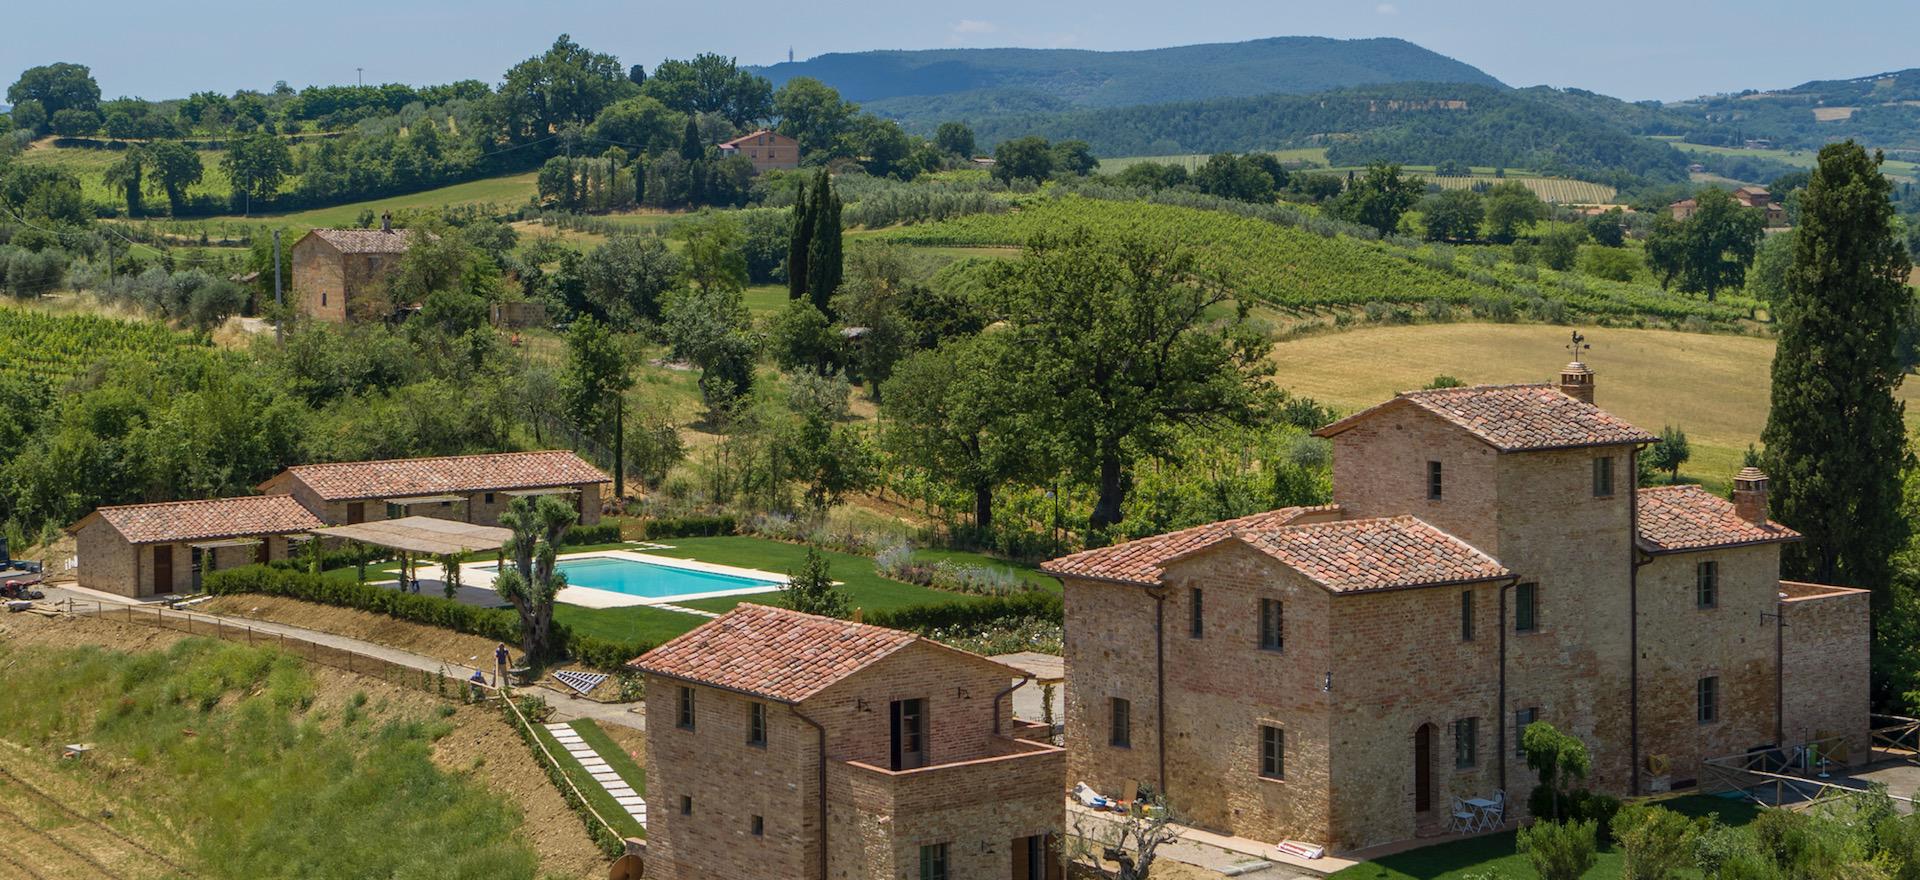 Agriturismo Toscana Agriturismo in Toscana  ideale per rilassarsi